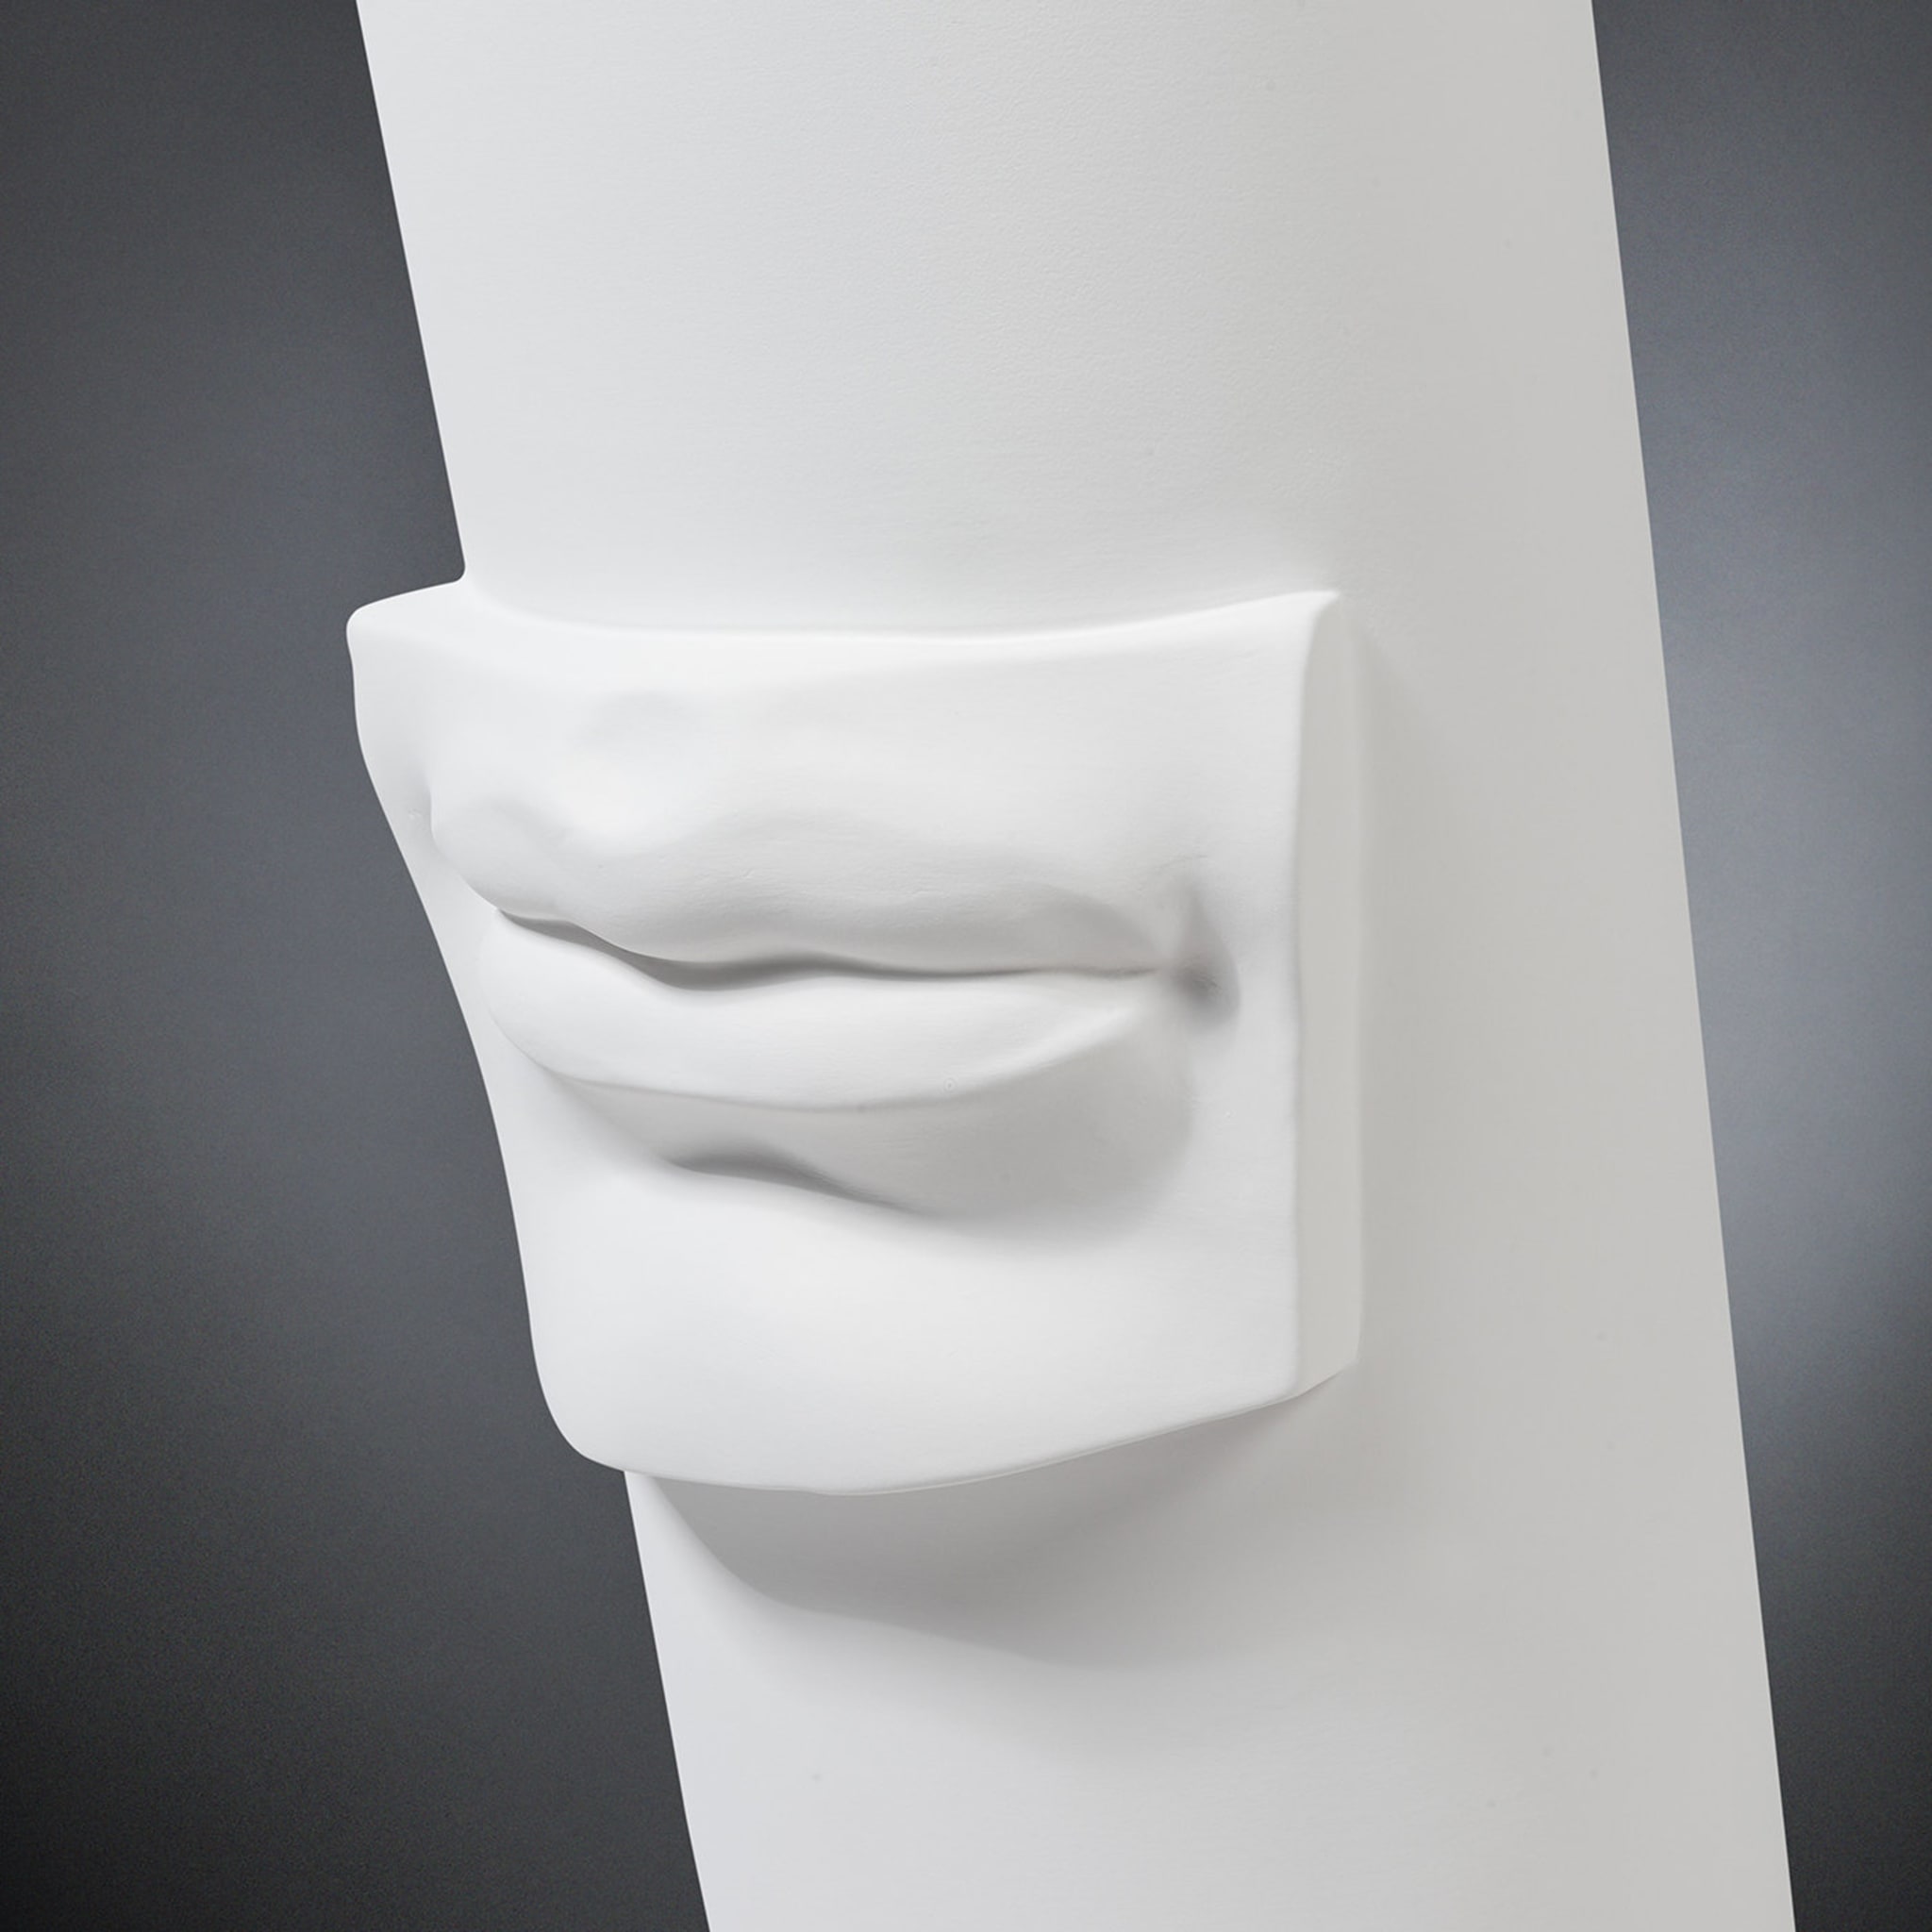 David's Lips White Vase - Alternative view 1